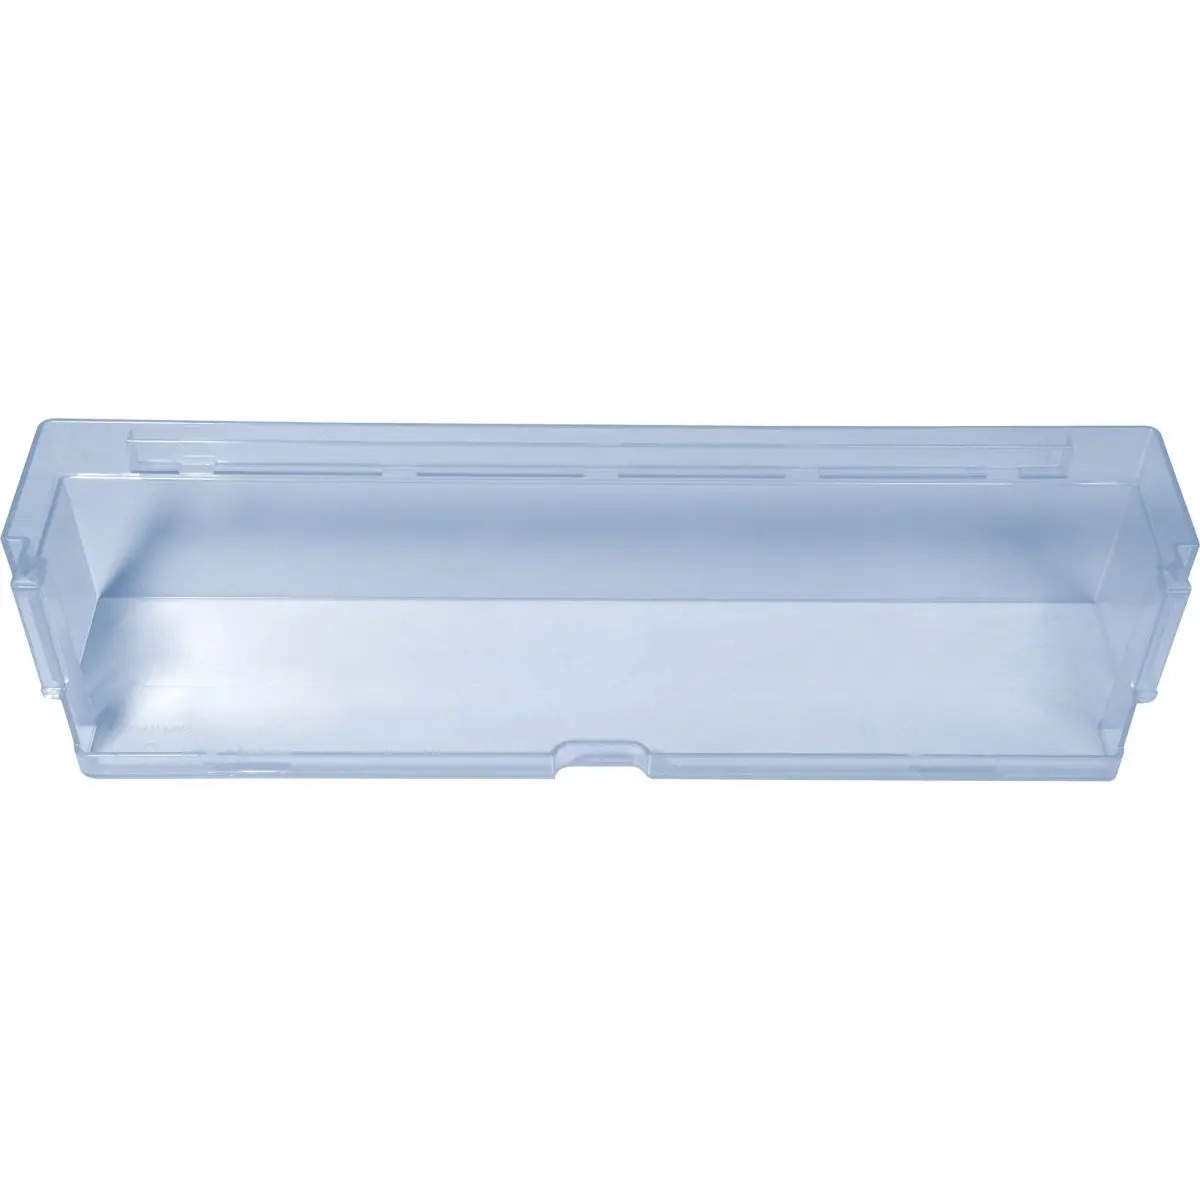 Suport pentru tort, albastru transparent, L 36 x D 8,8 x H 7,5 cm pentru frigidere Dometic RML 9430, 9435